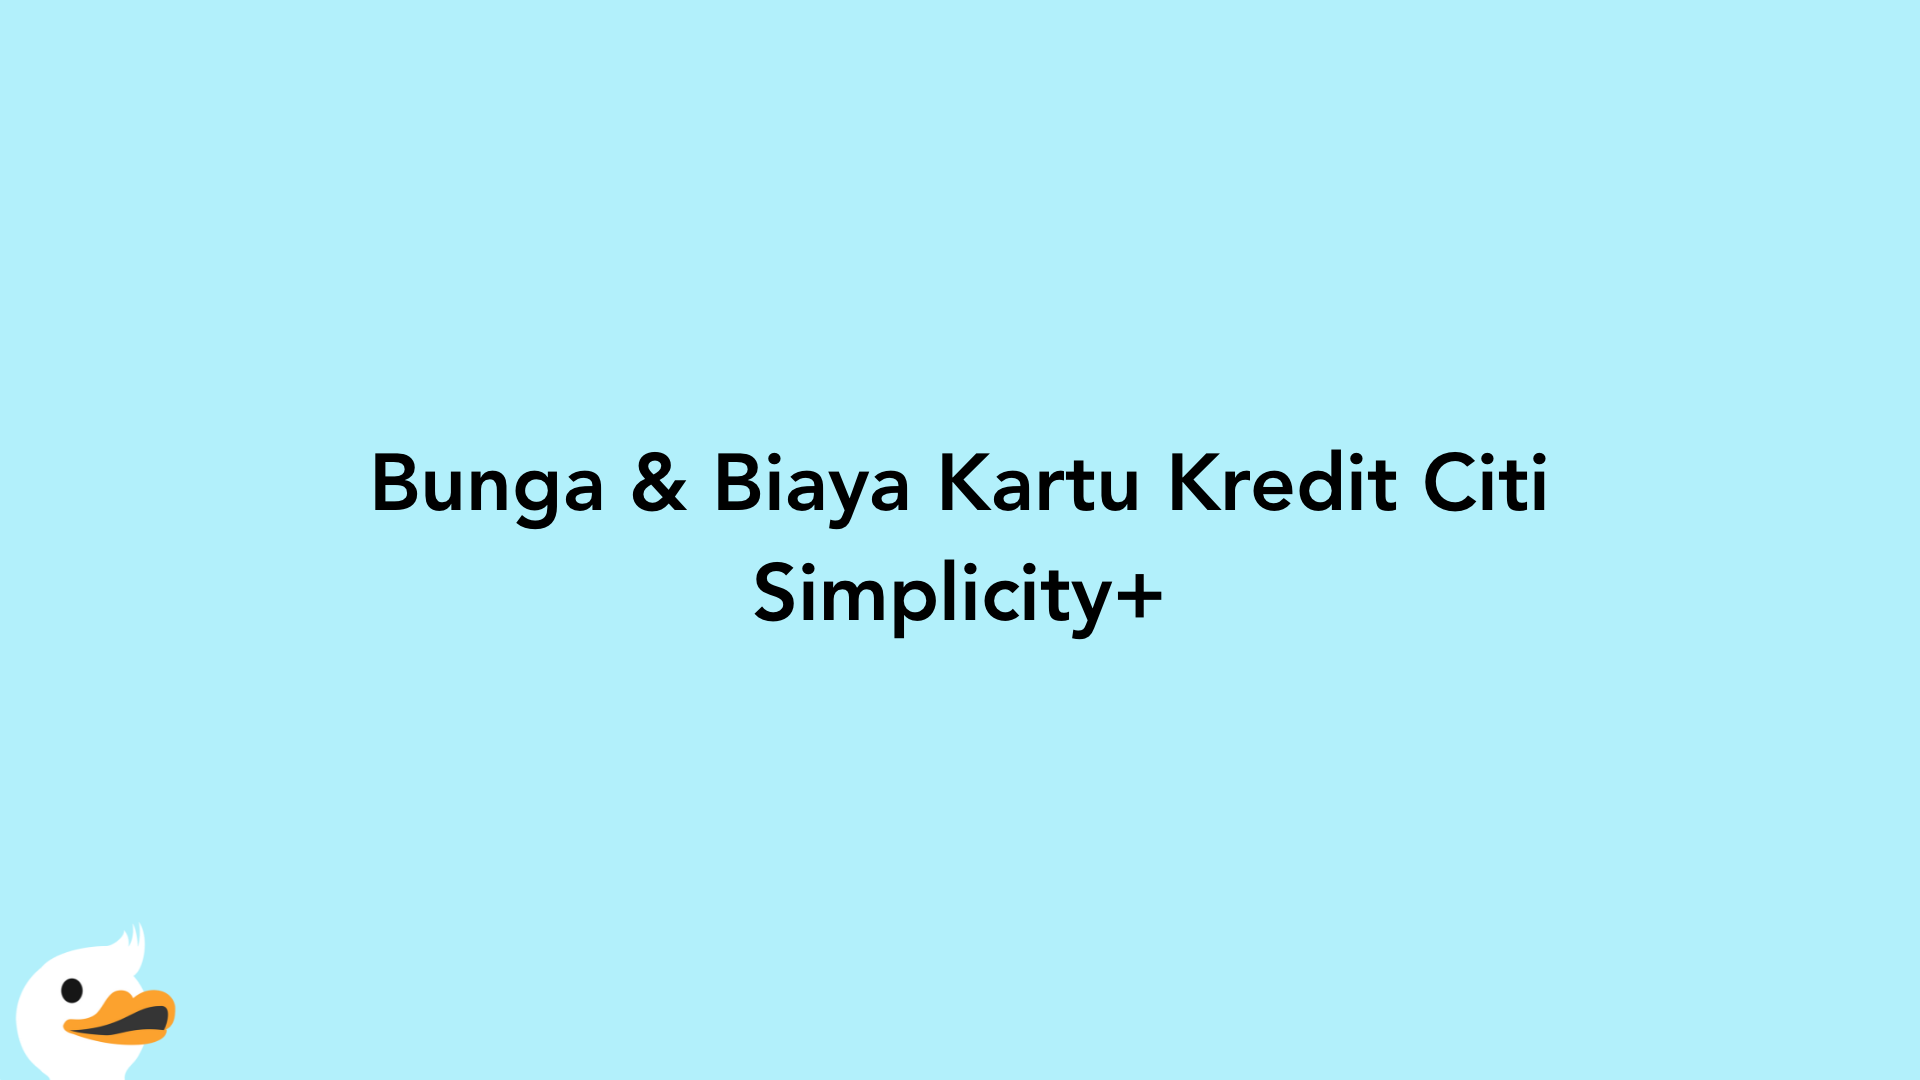 Bunga & Biaya Kartu Kredit Citi Simplicity+